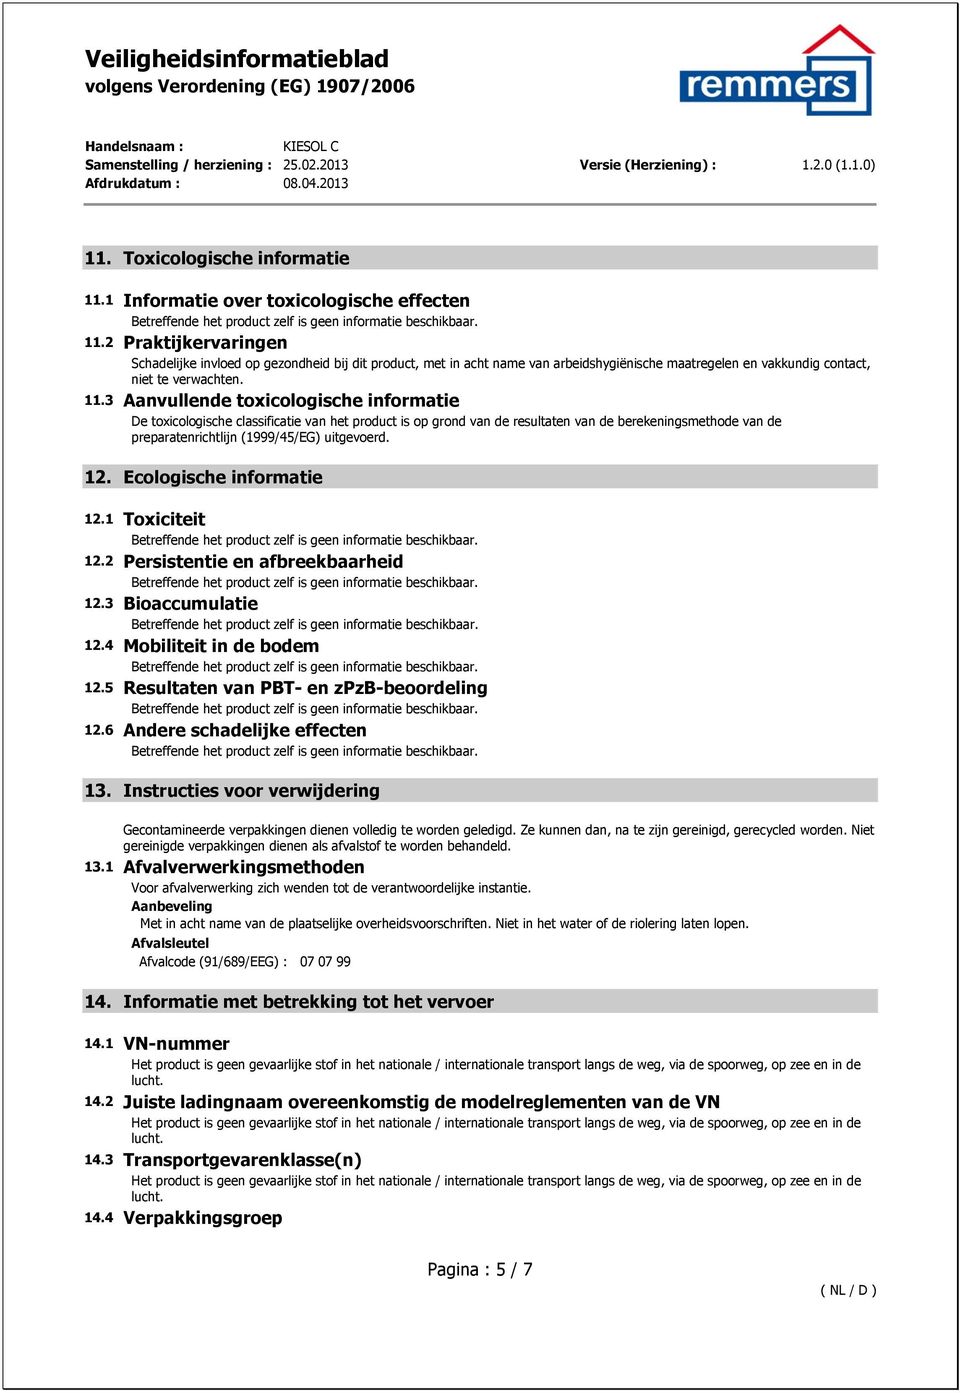 3 Aanvullende toxicologische informatie De toxicologische classificatie van het product is op grond van de resultaten van de berekeningsmethode van de preparatenrichtlijn (1999/45/EG) uitgevoerd. 12.